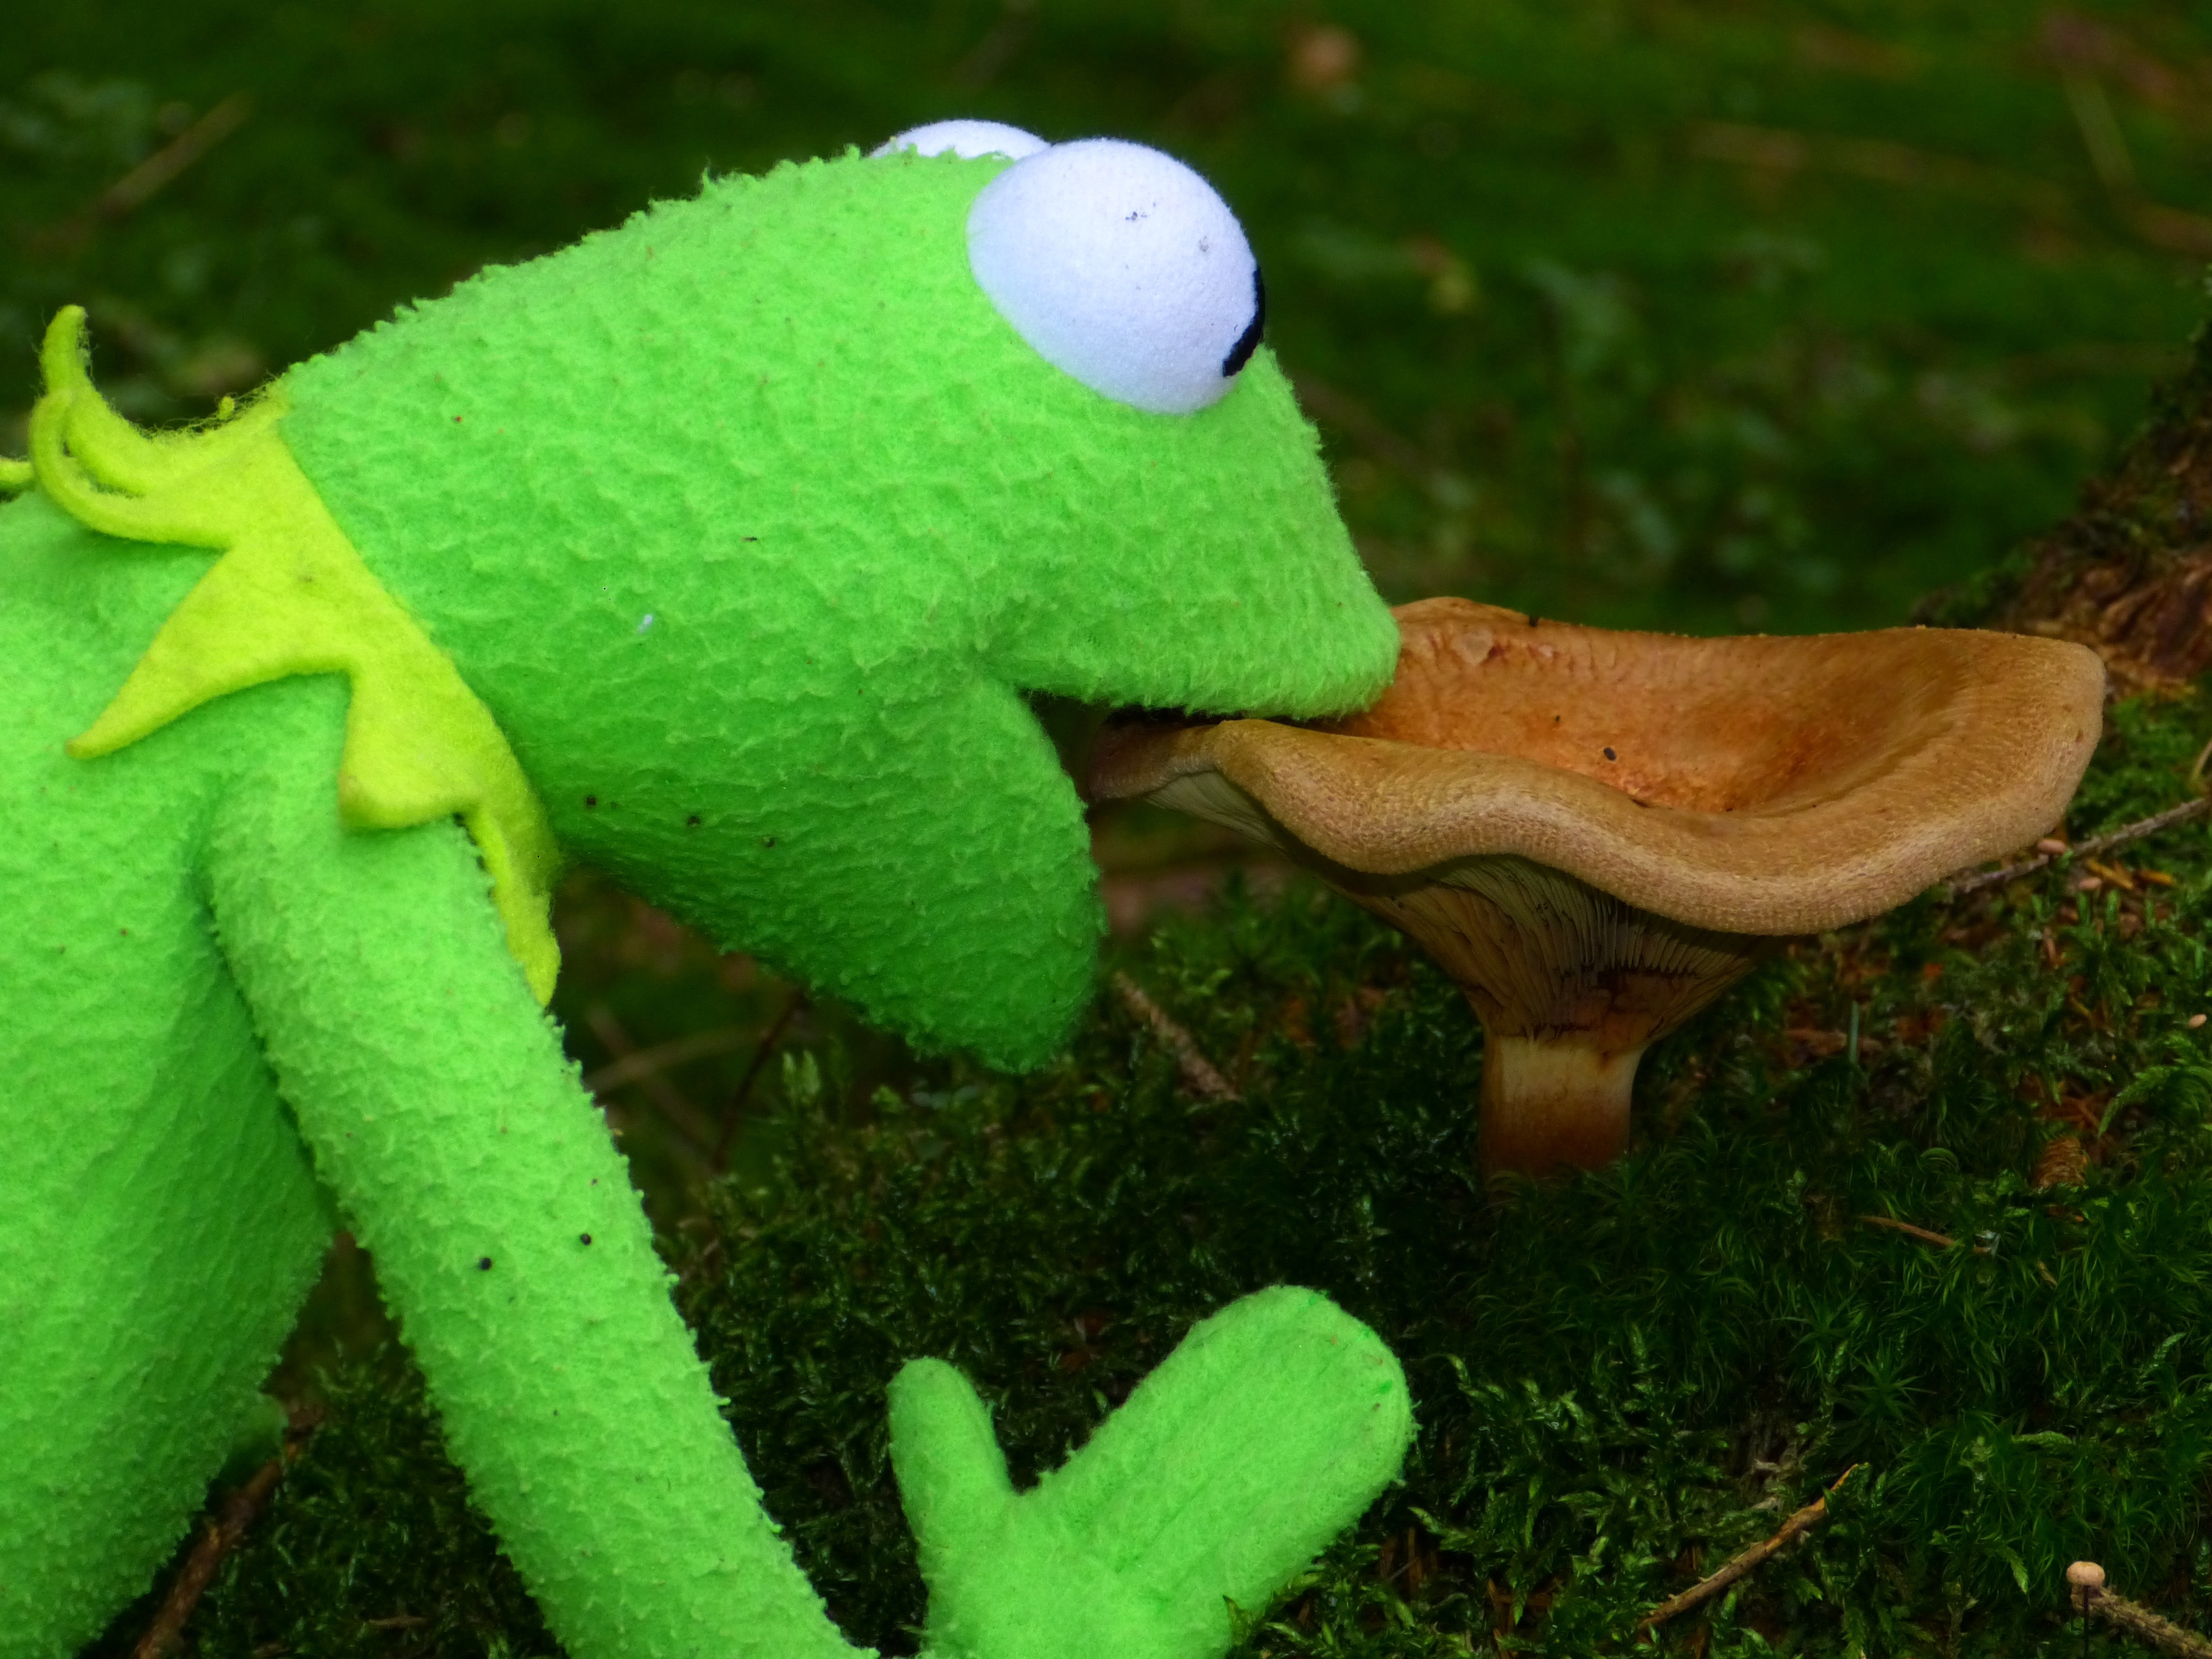 kermit eatting mushroom